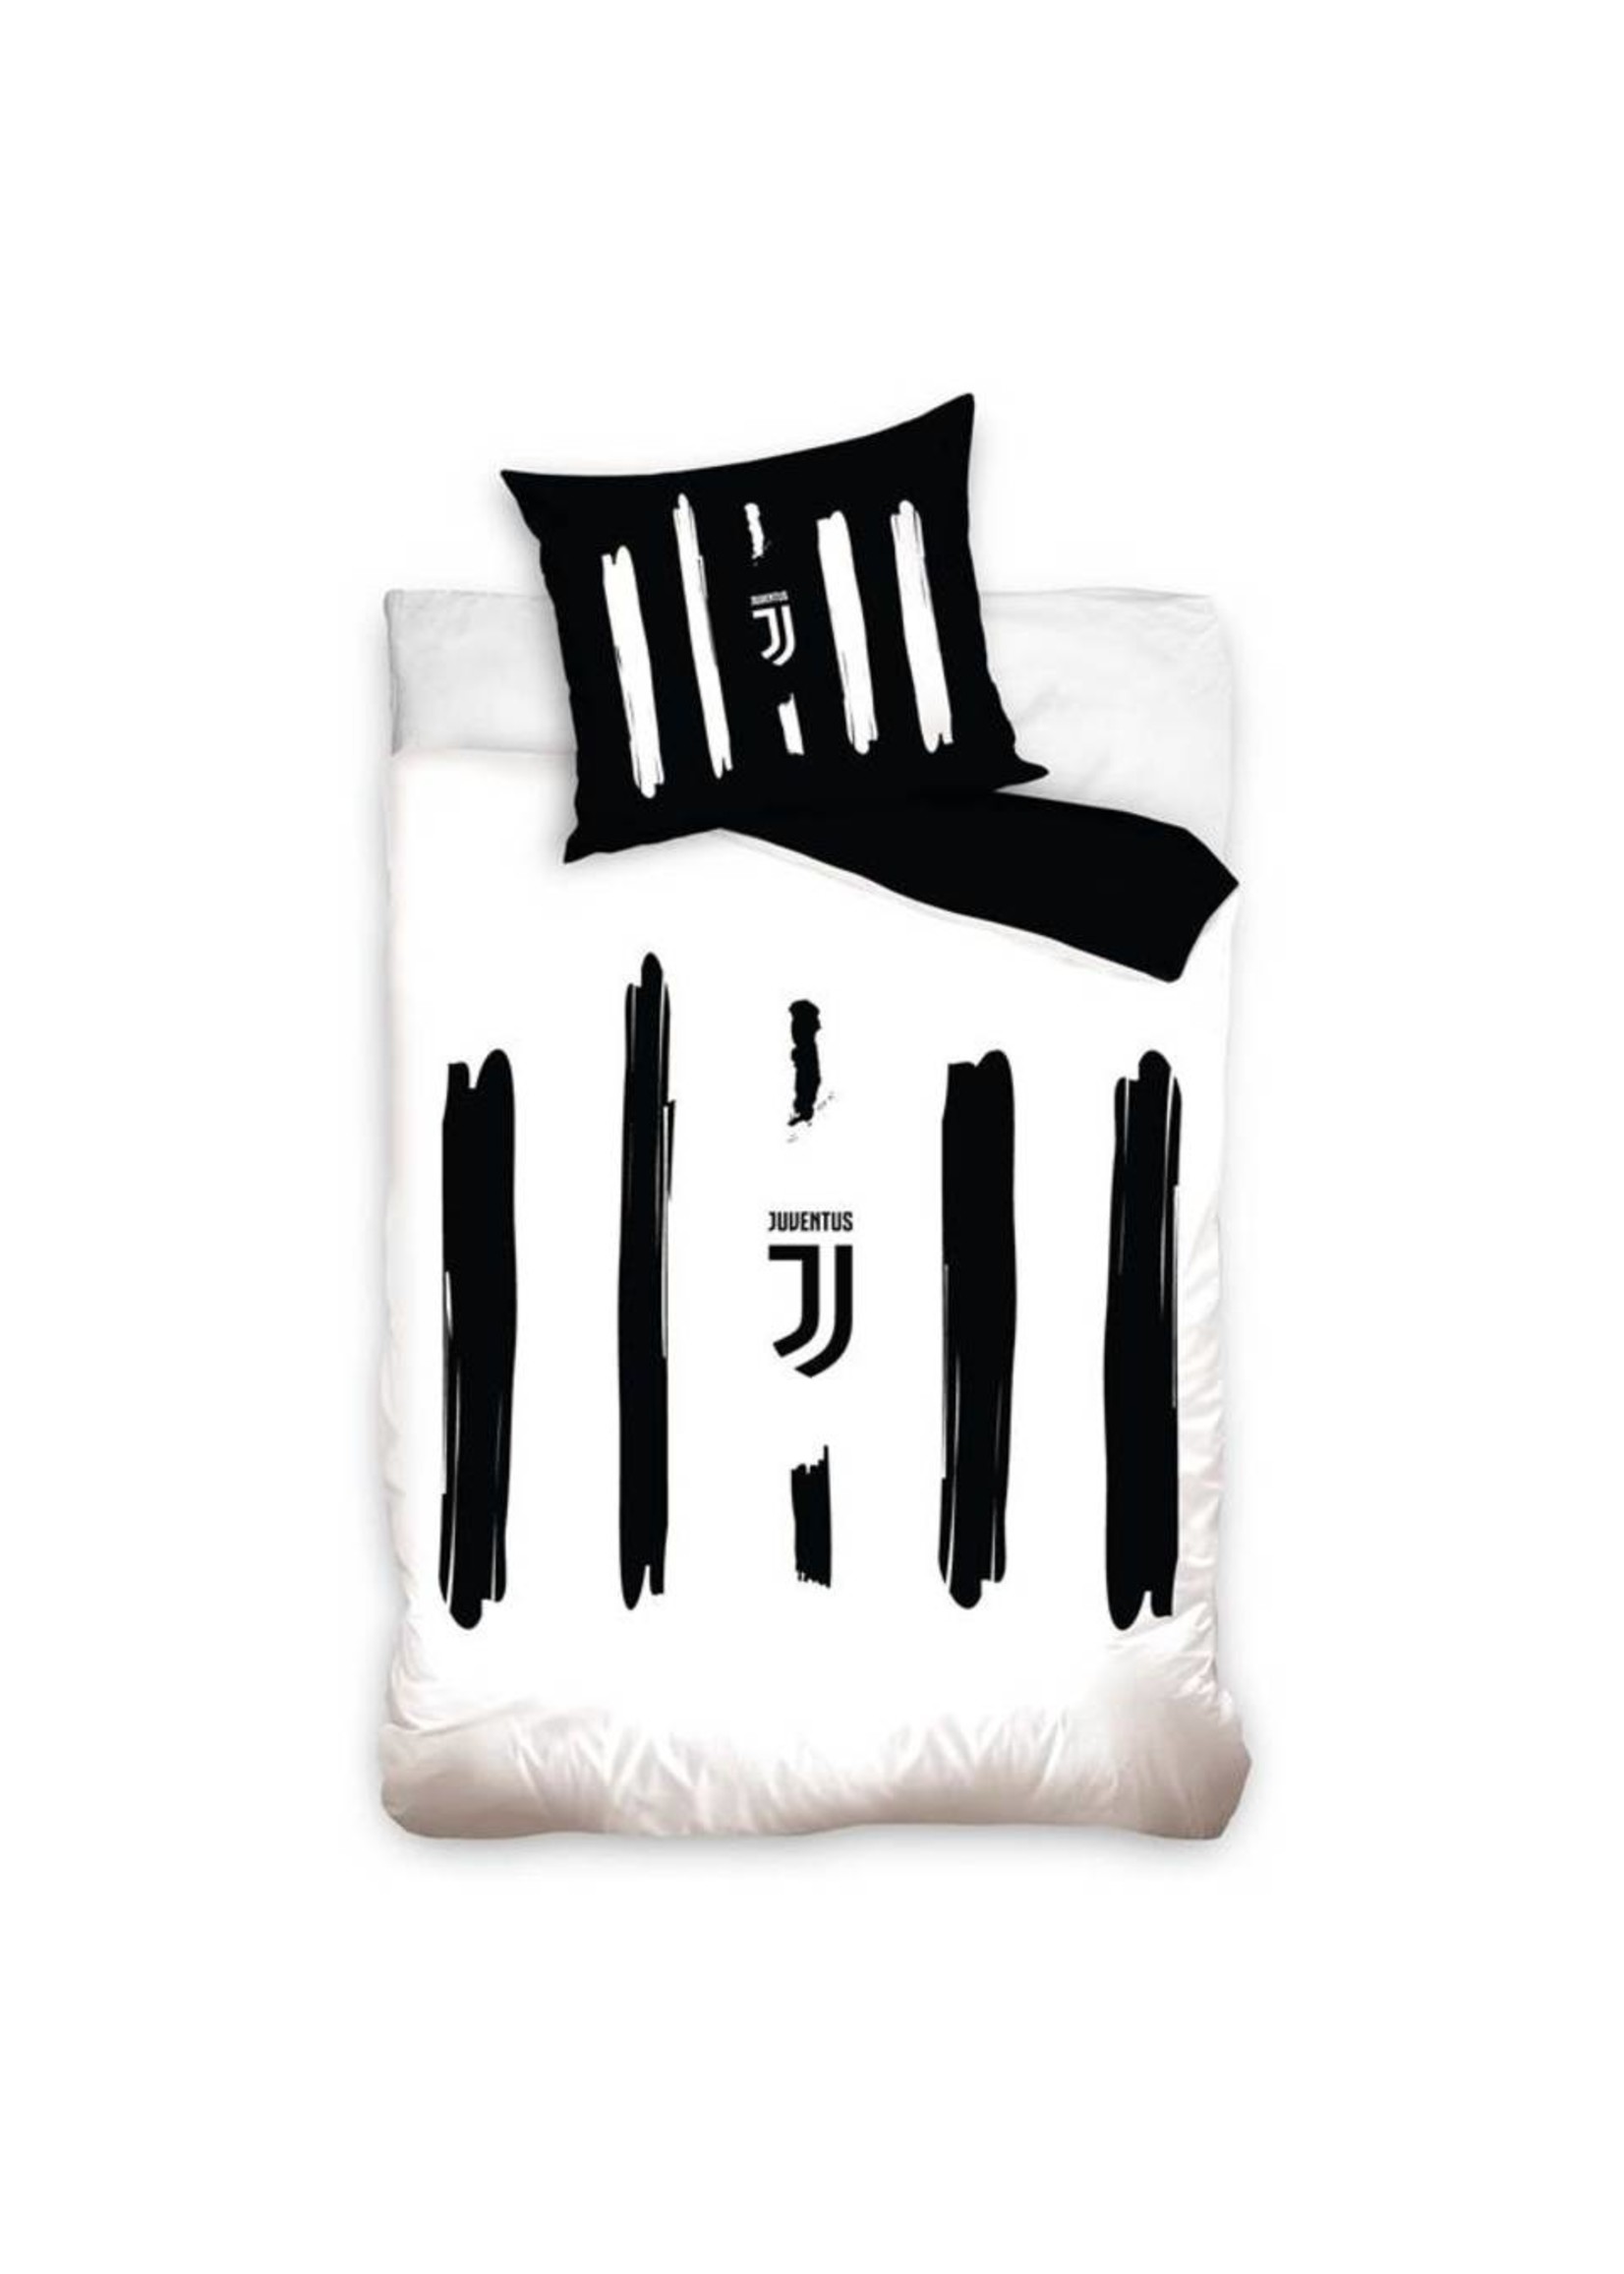 Juventus Duvet Cover Set